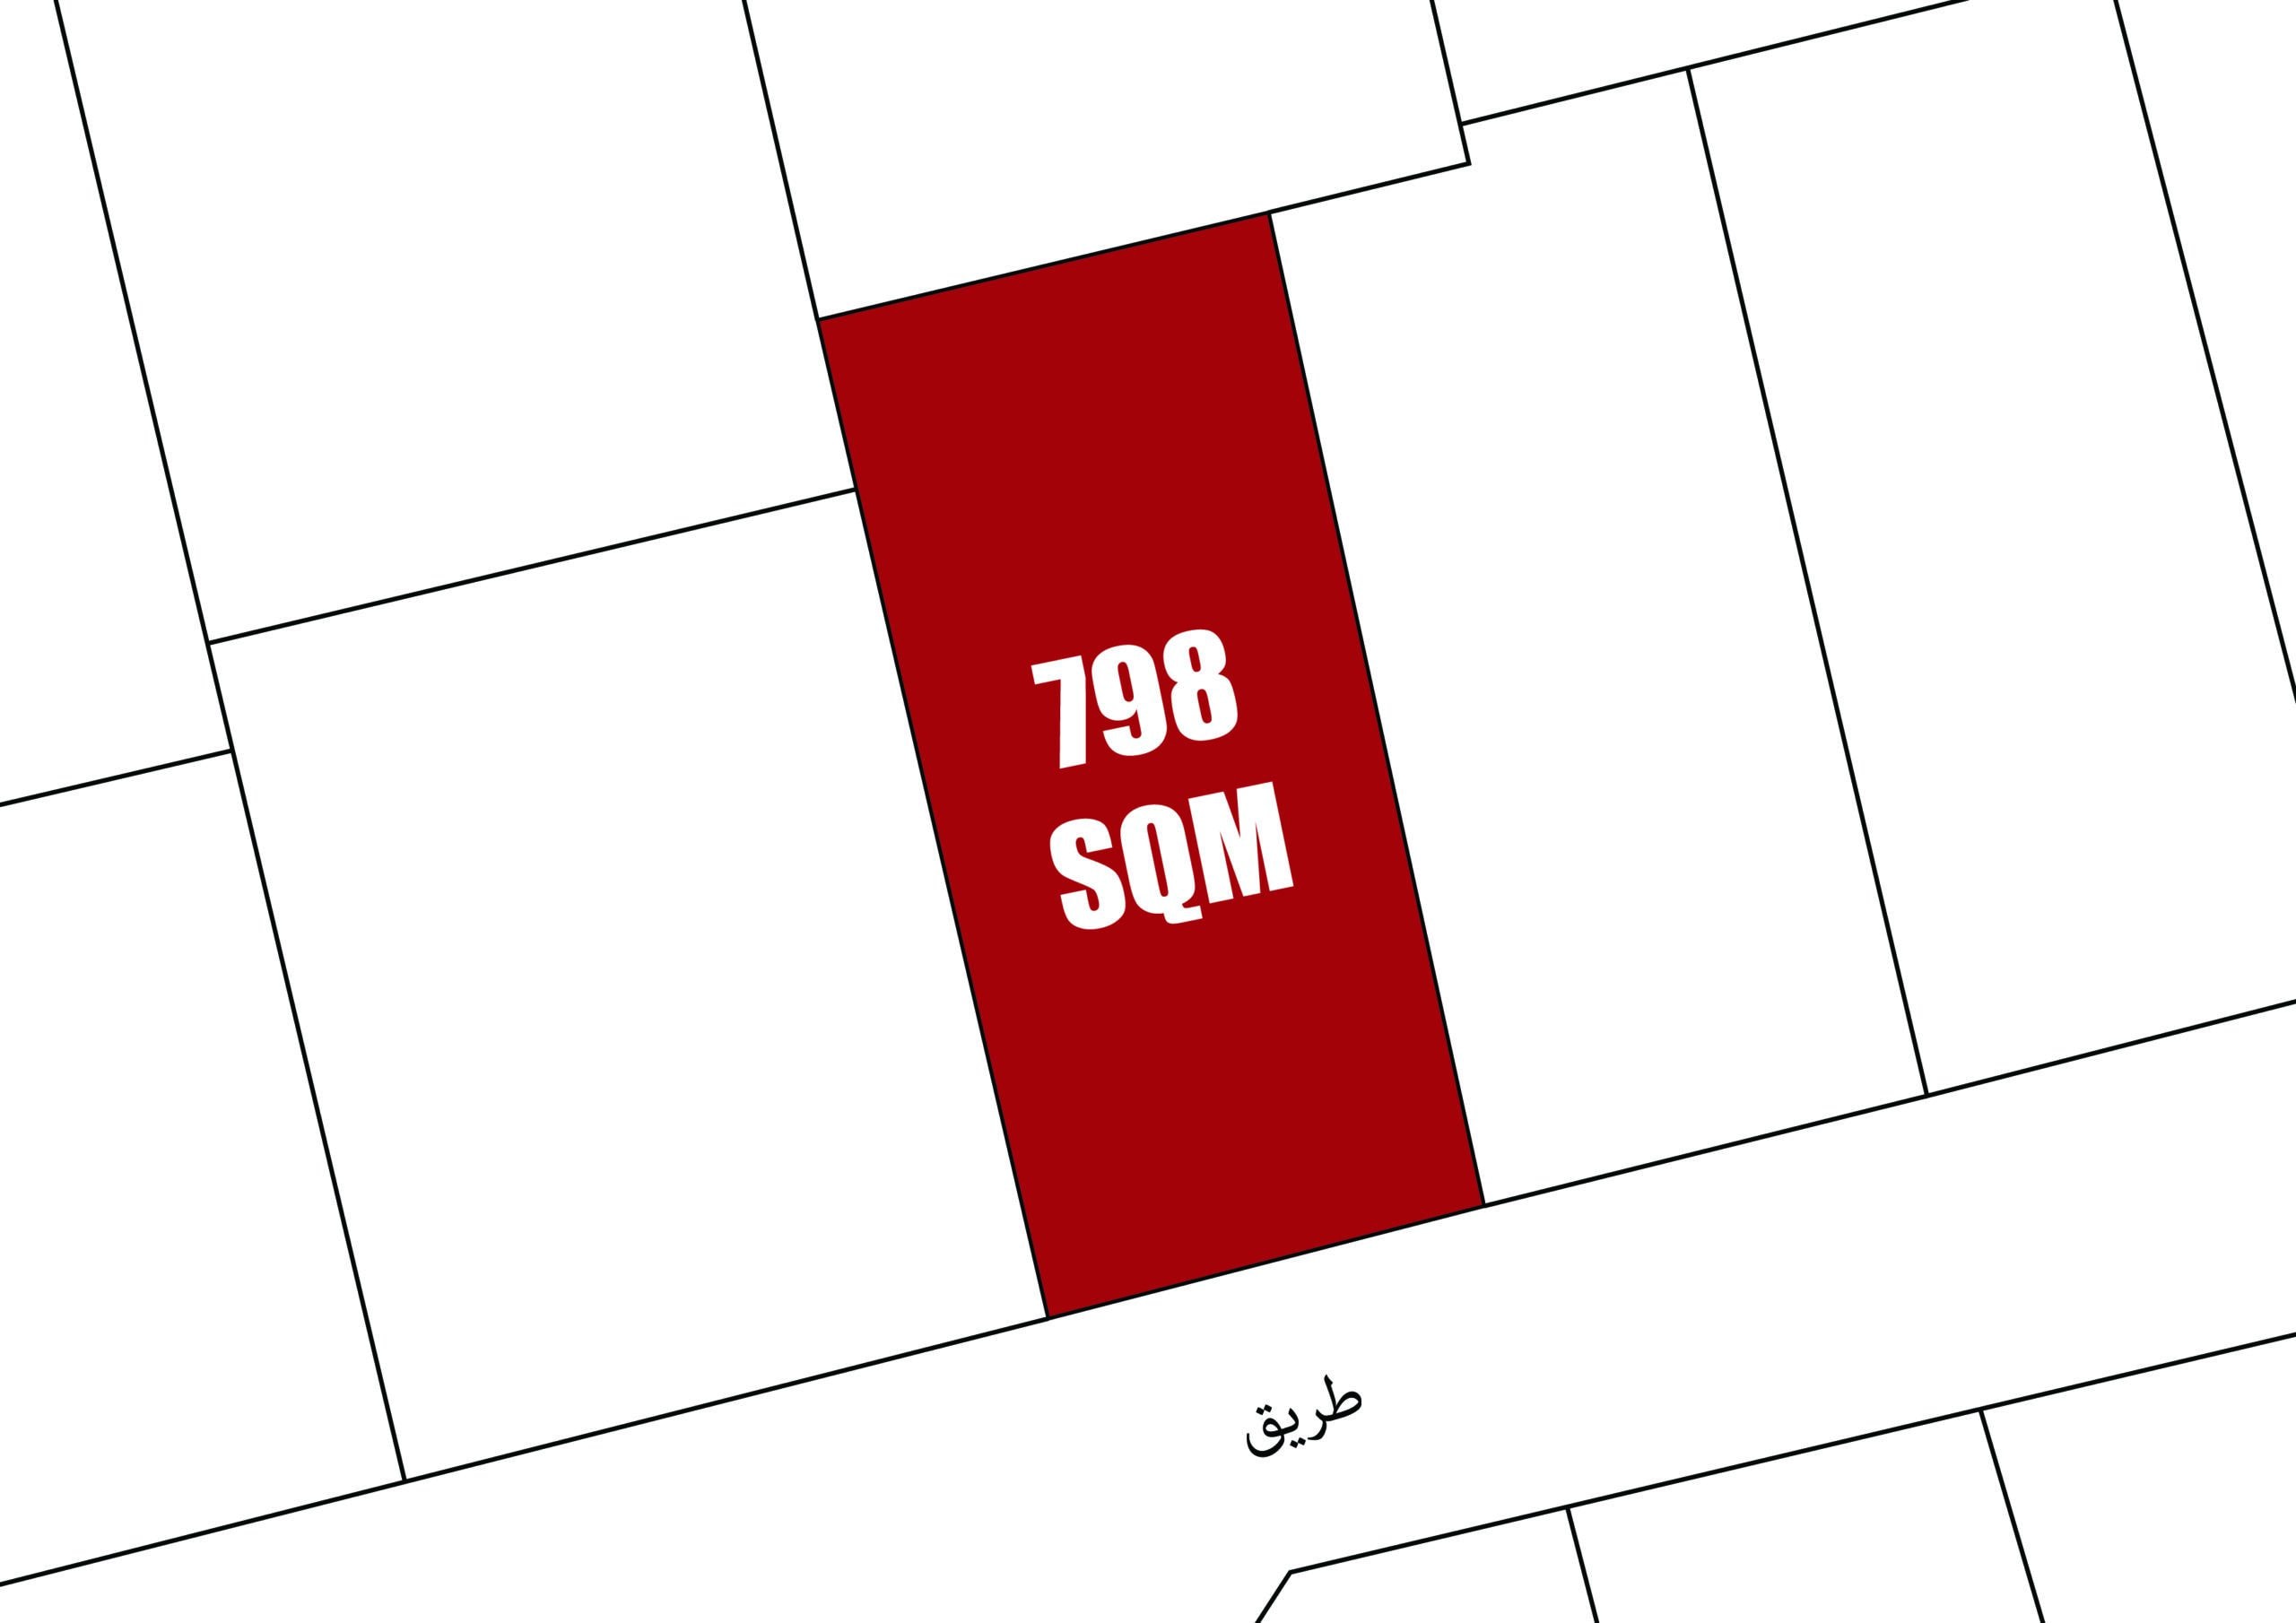 منظر جوي لعقار مساحته 798 مترًا مربعًا محدد باللون الأحمر داخل شبكة من الكتل البيضاء، مع تسمية "798 مترًا مربعًا" بنص أبيض على خلفية حمراء.